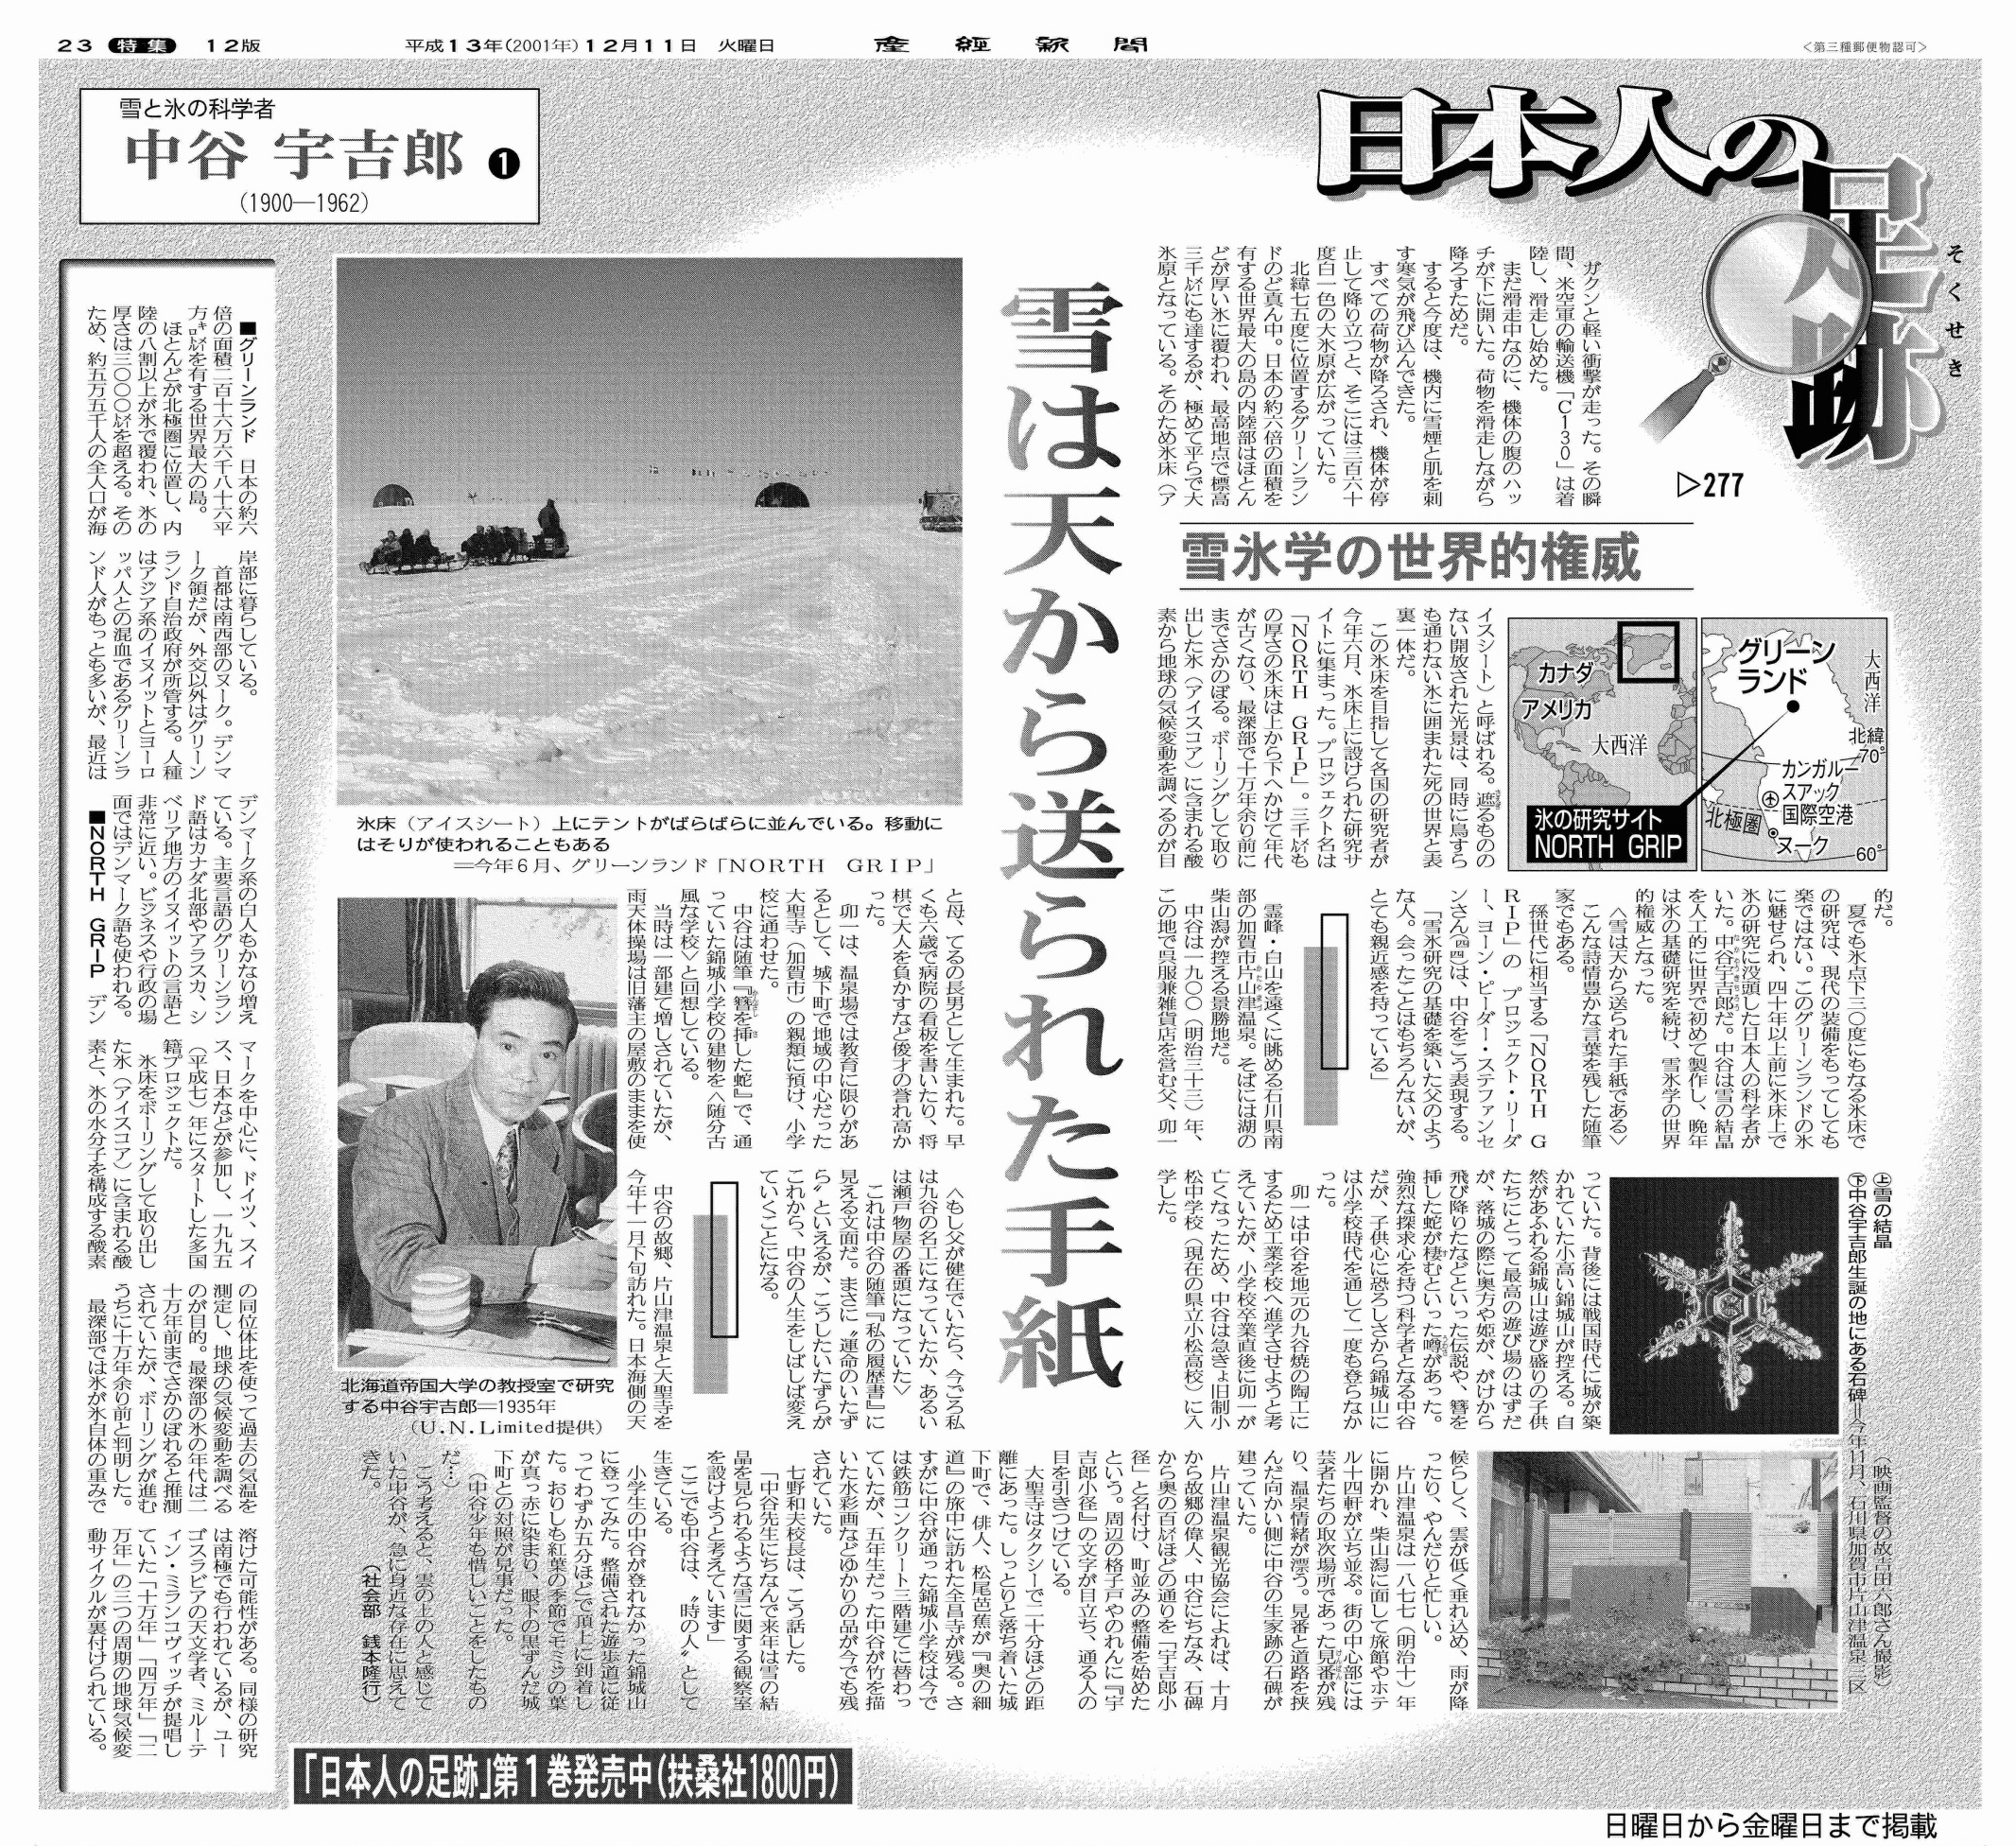 日本人の足跡】「天からの手紙」を読みほどき 中谷宇吉郎は雪氷学の権威となった - 産経ニュース